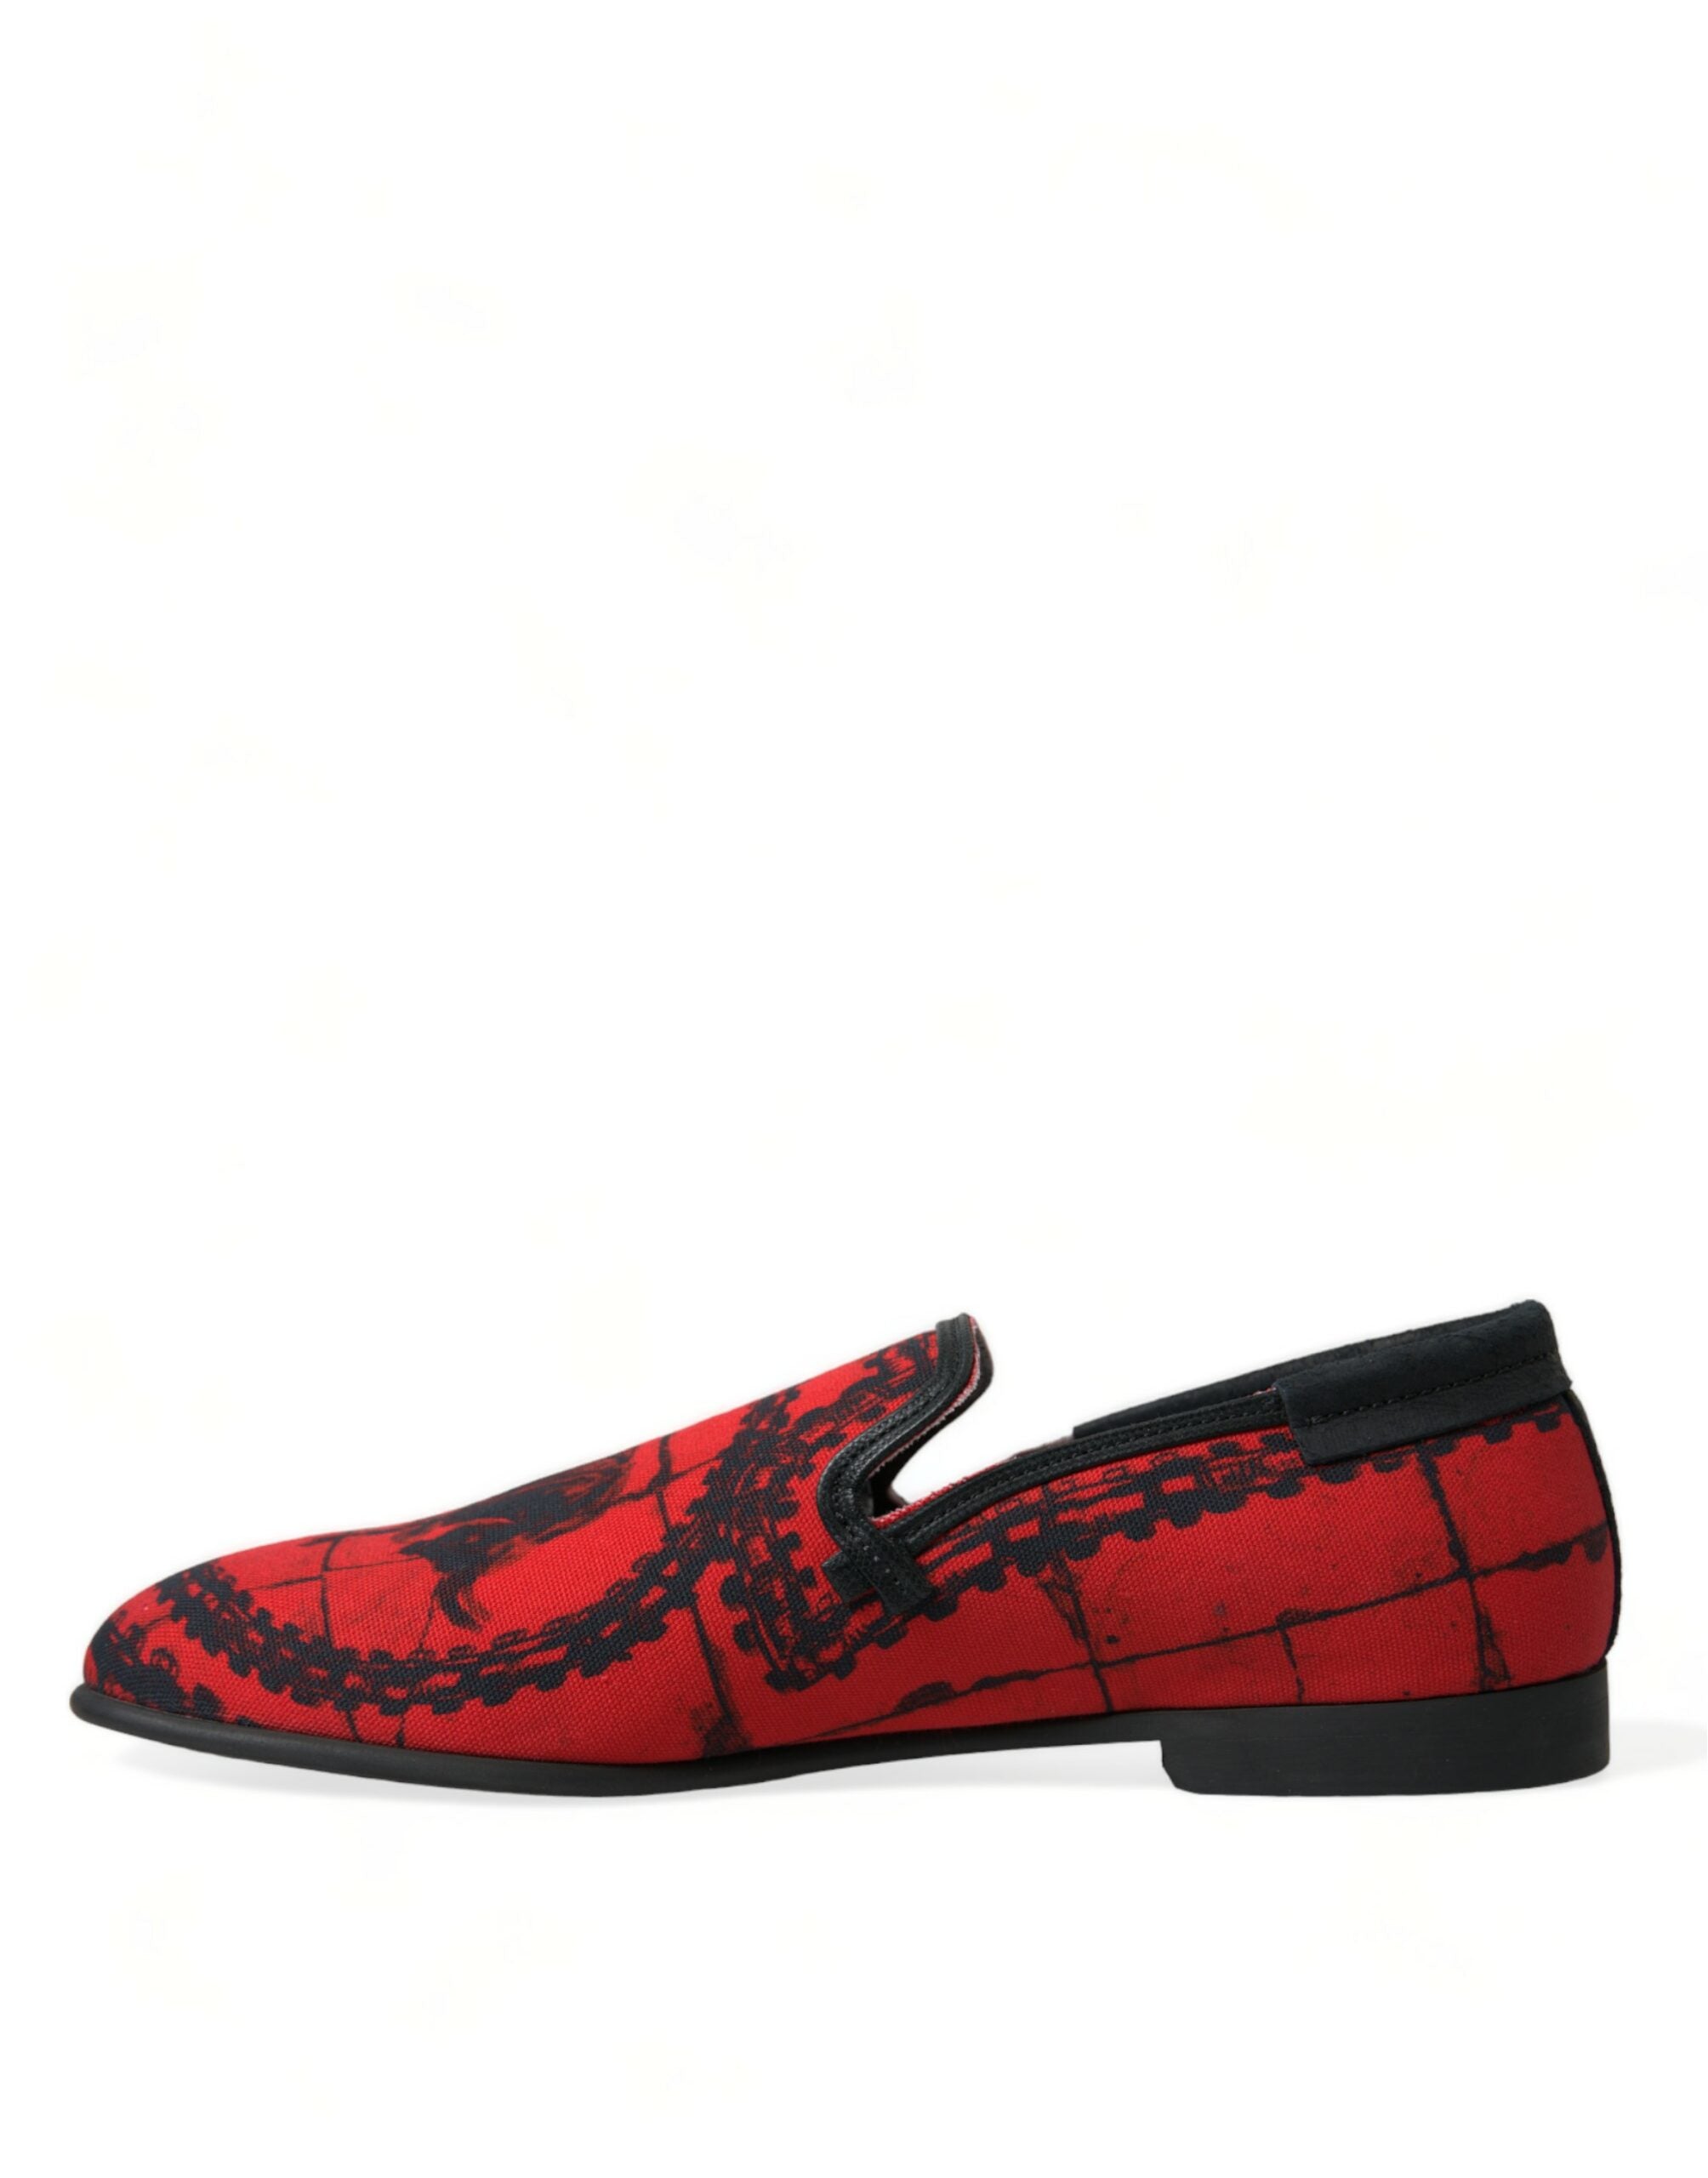 Dolce & Gabbana Mocasines Torero Rojo Negro Zapatillas Hombre Zapatos